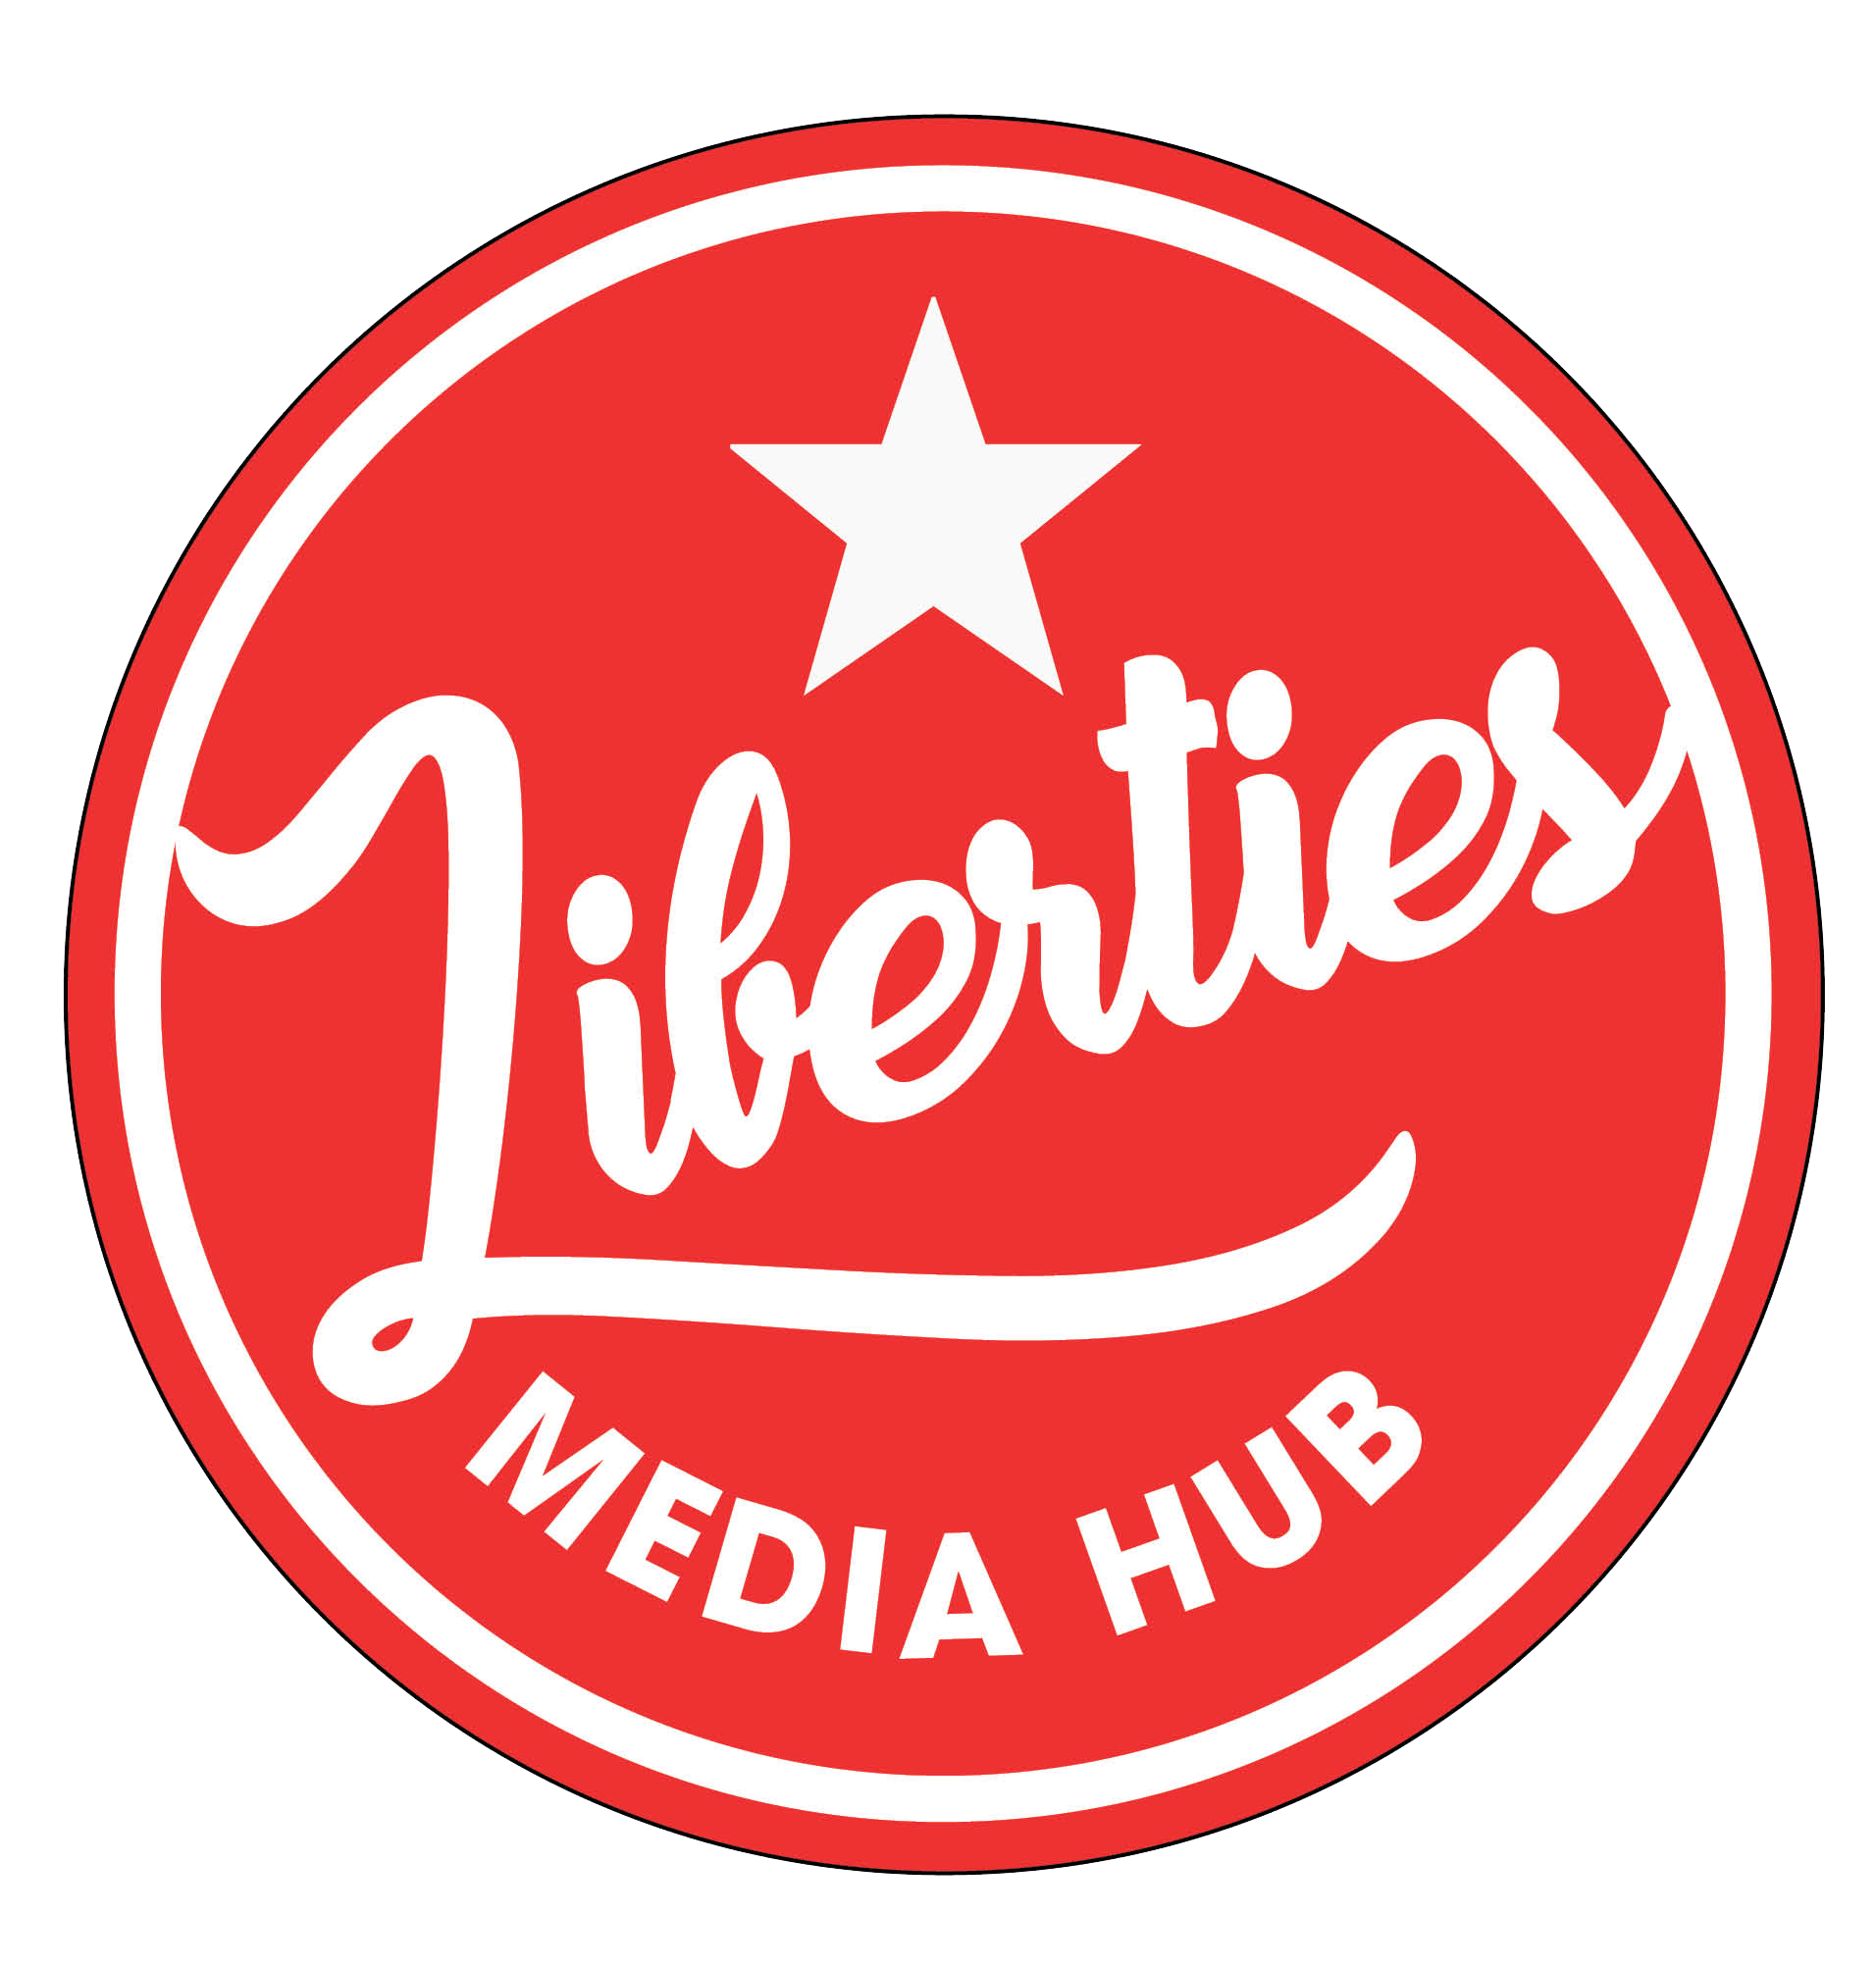 liberties media hub